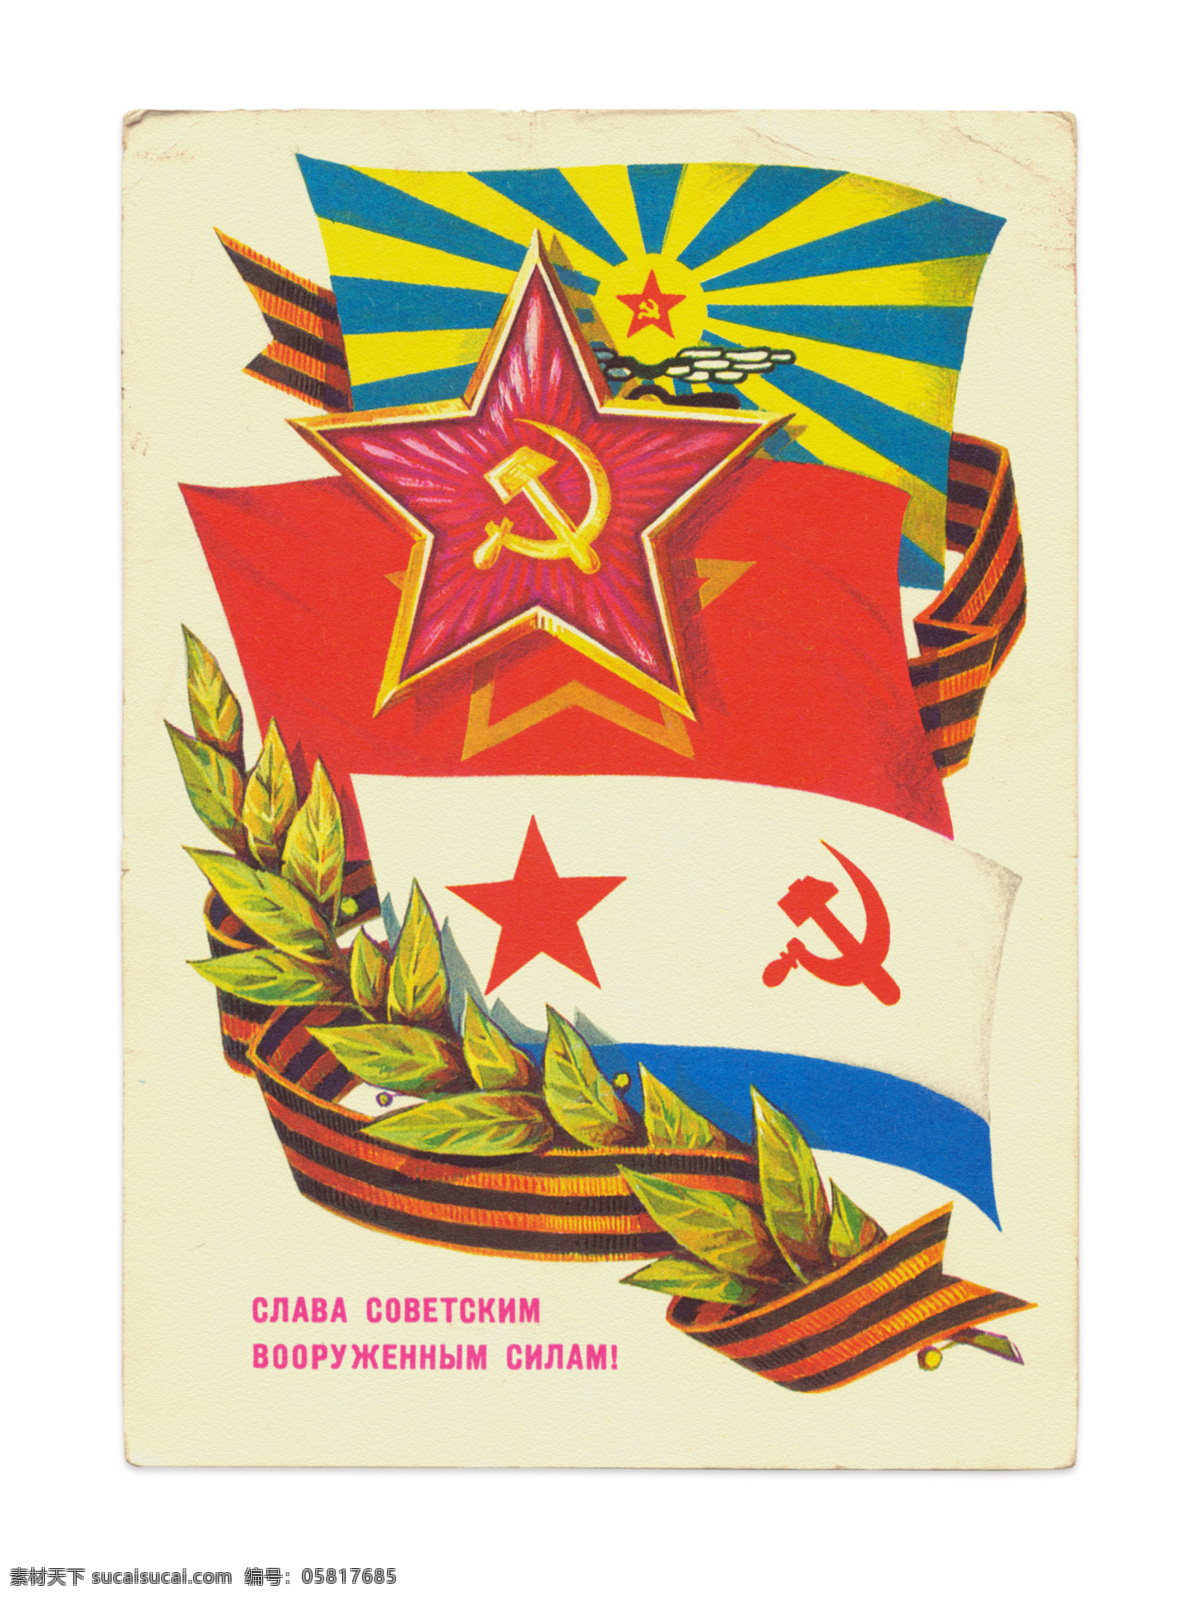 苏联红军 军事主题 徽章 五角星 红旗 党旗 军事武器 现代科技